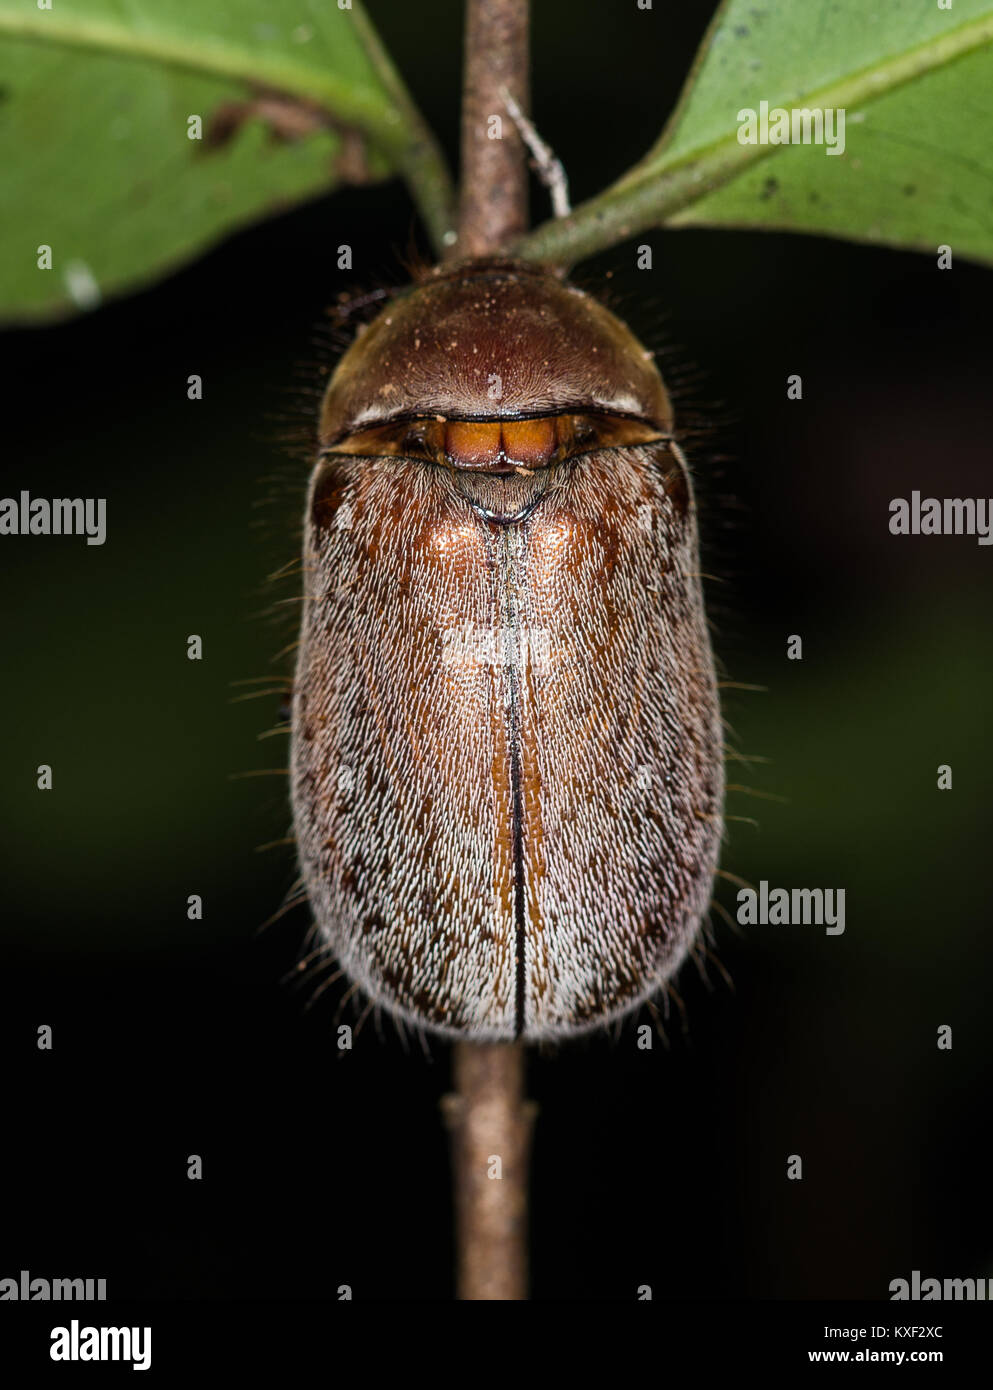 Back of a hairy beetle. Ranomafana National Park. Madagascar, Africa. Stock Photo